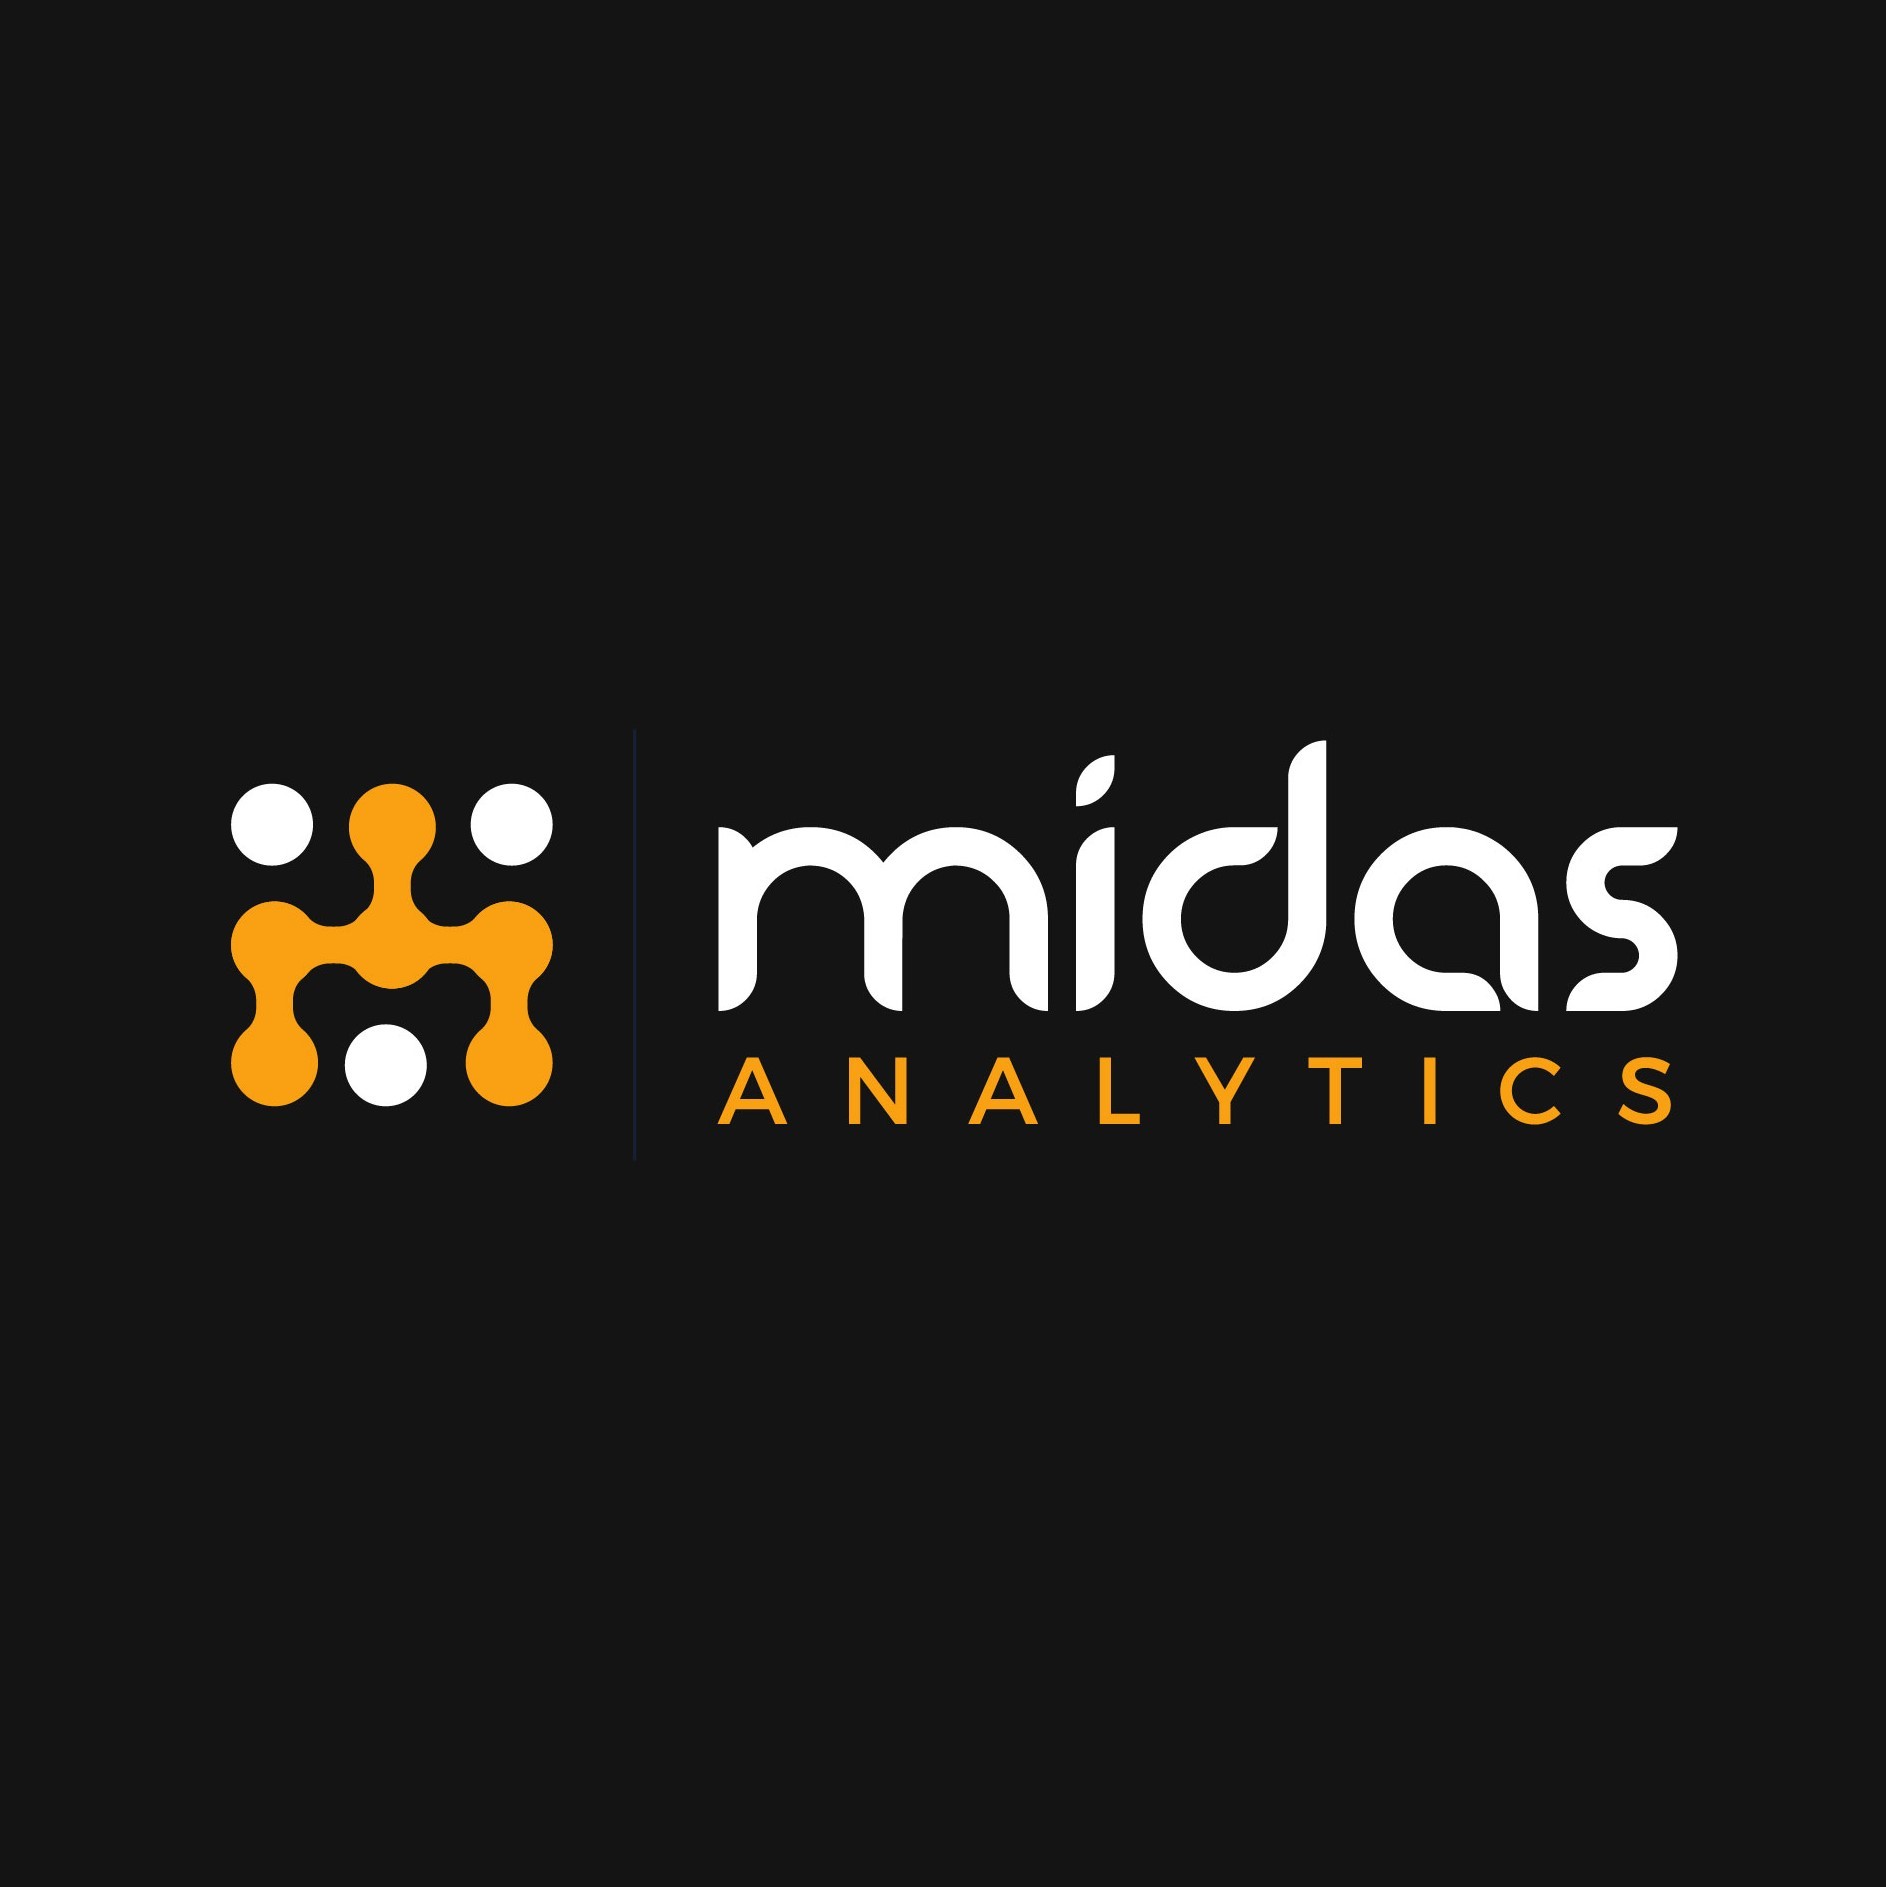 Midas Analytics Limited